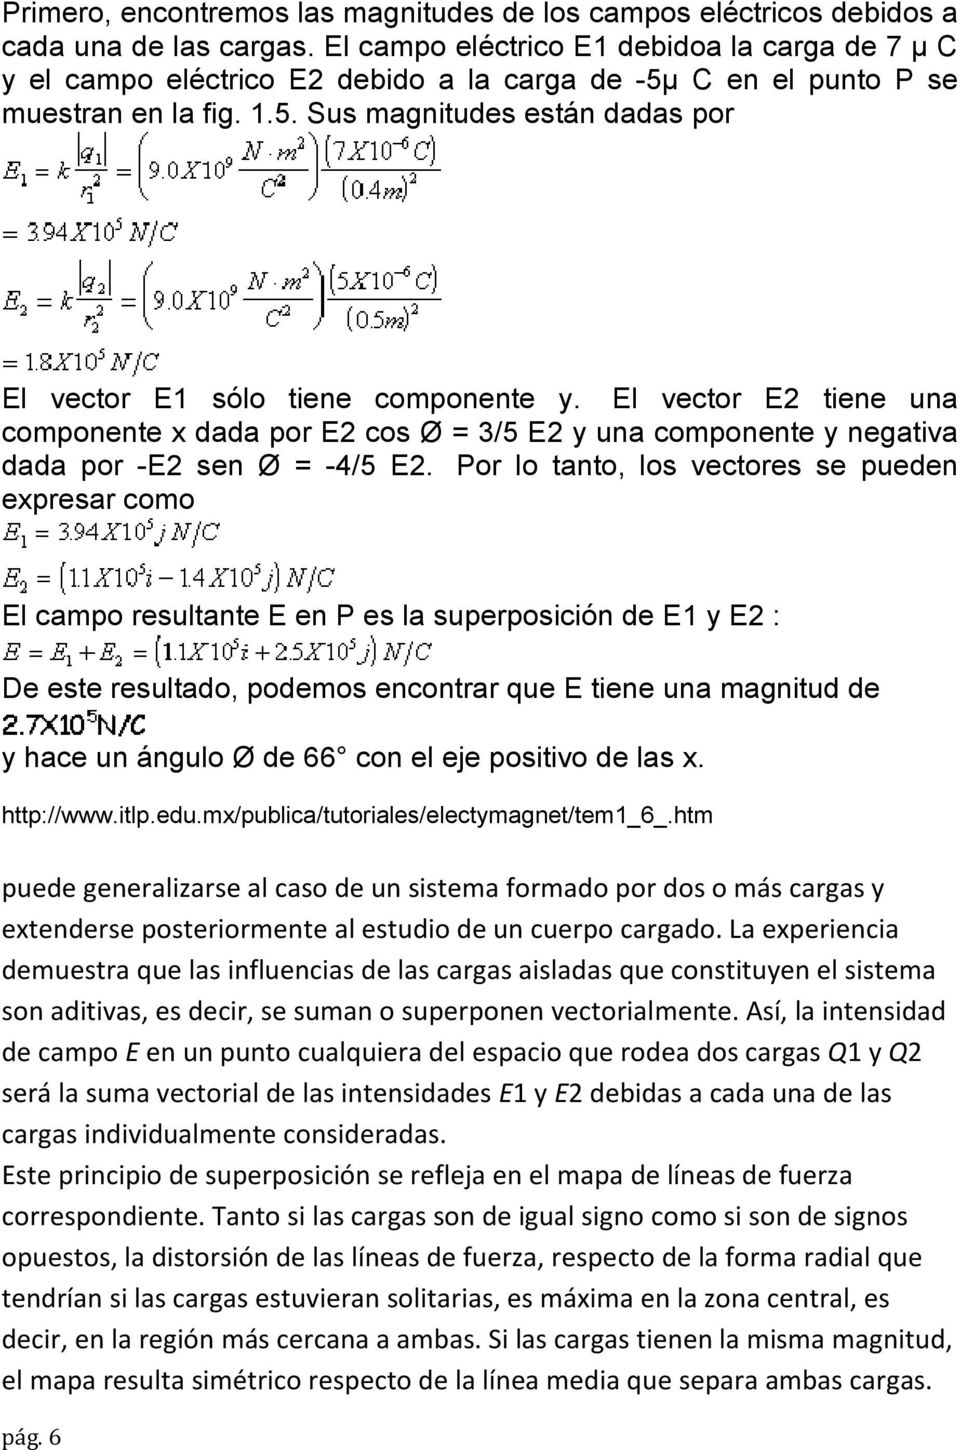 El vector E2 tiene una componente x dada por E2 cos Ø = 3/5 E2 y una componente y negativa dada por -E2 sen Ø = -4/5 E2.